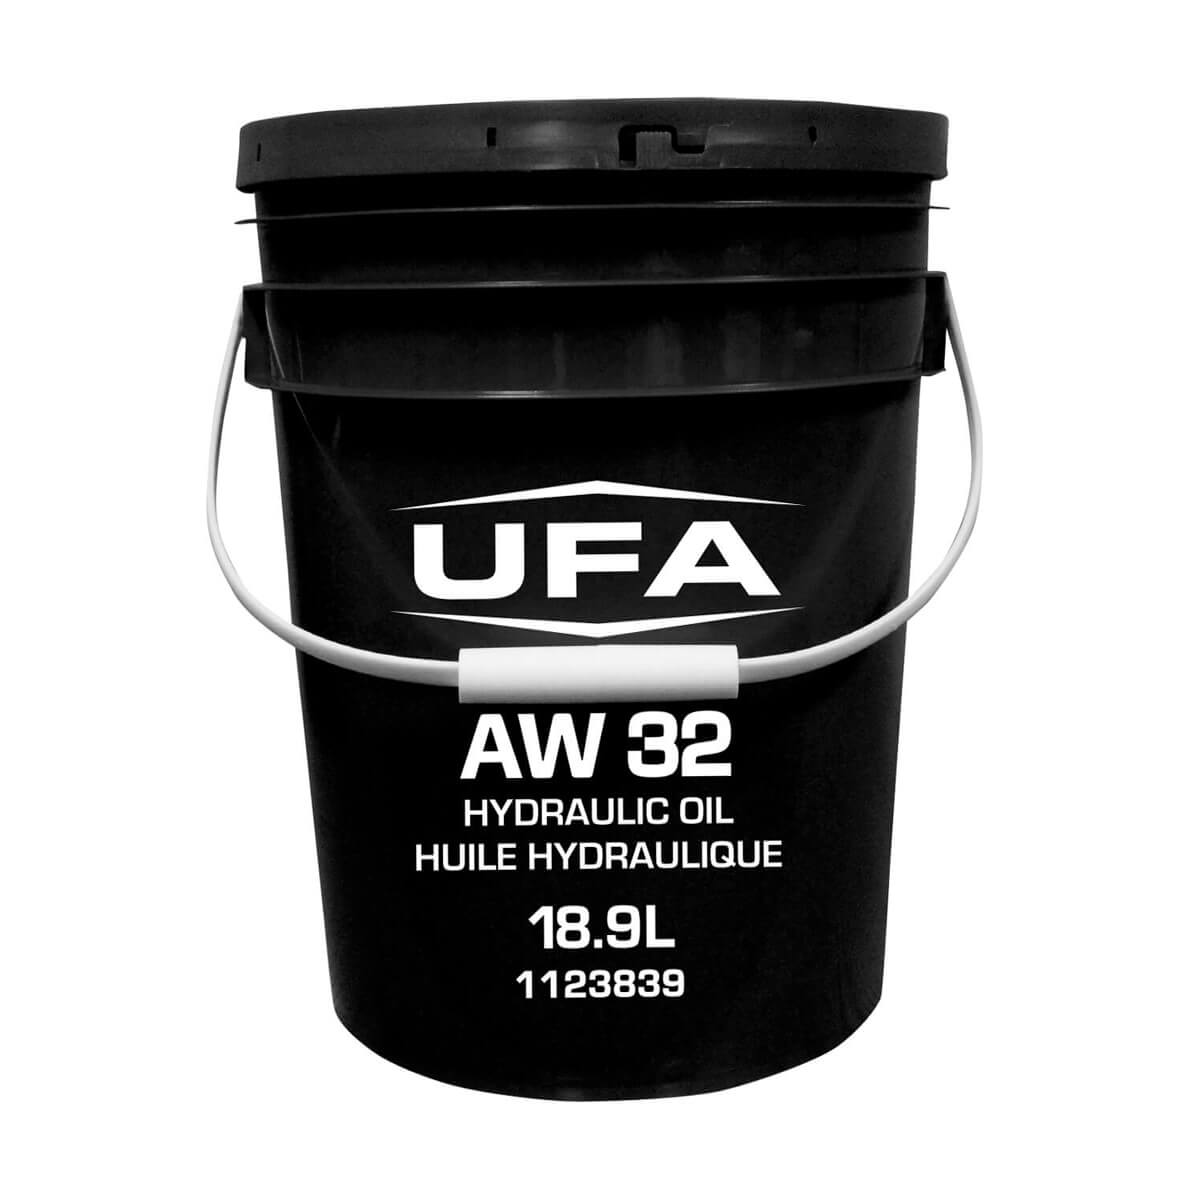 UFA Anti-Wear Hydraulic Oil AW 32 - 18.9 L